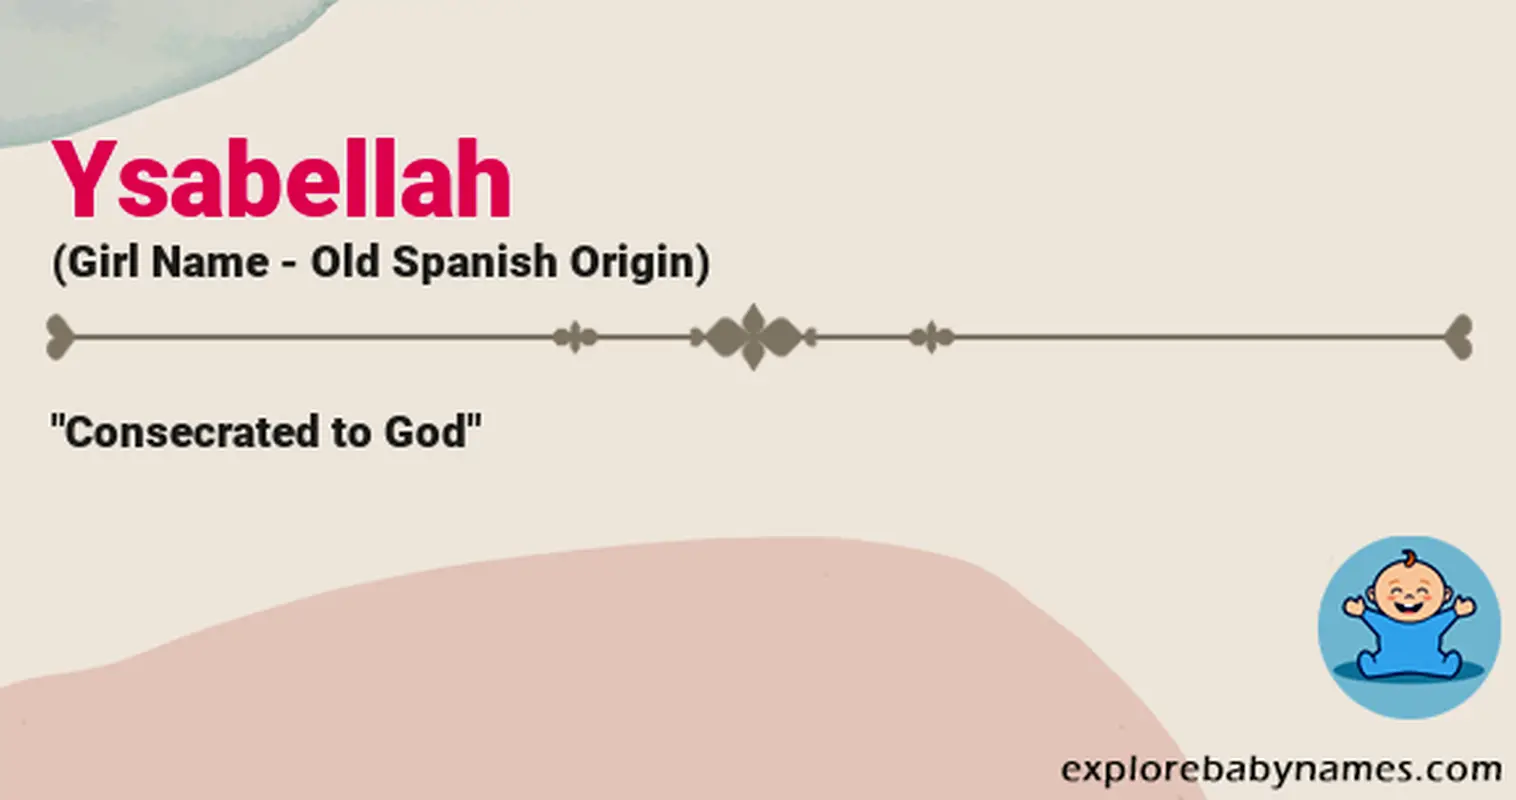 Meaning of Ysabellah